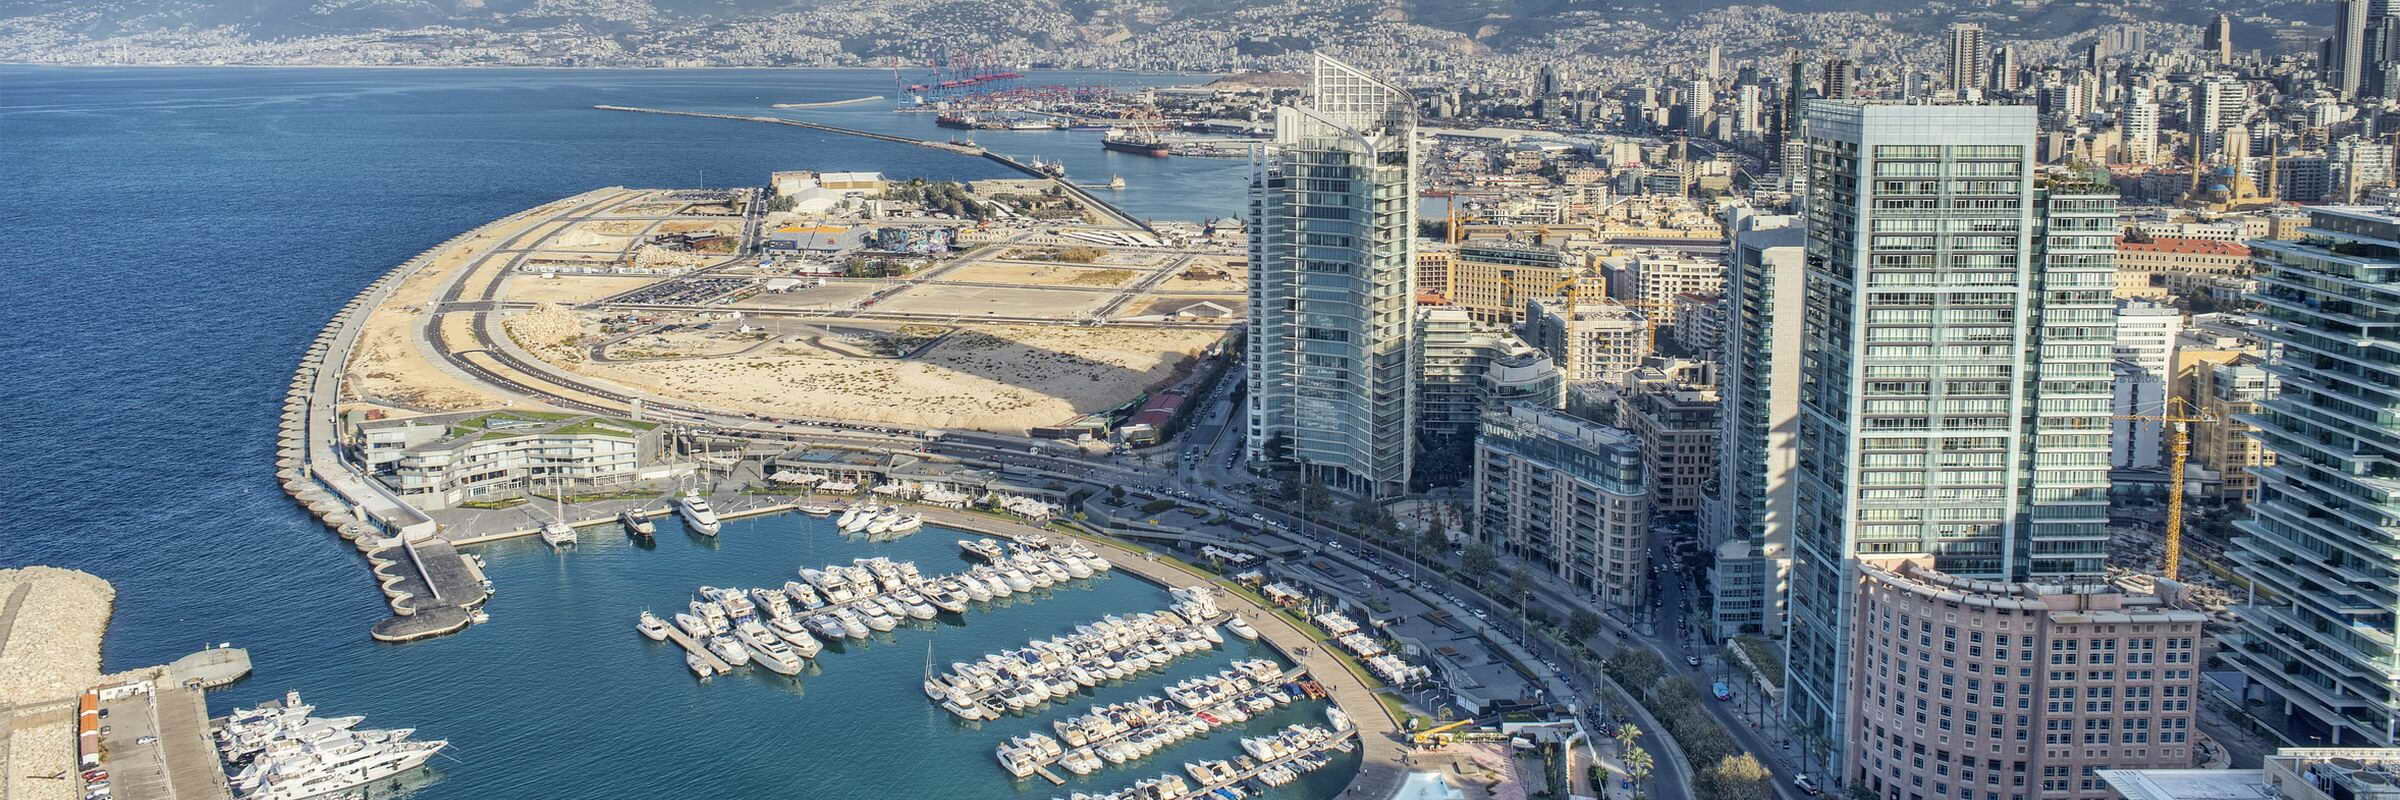 Beirut, die Hauptstadt des Libanon, ist an der Levanteküste am östlichen Mittelmeer gelegen.